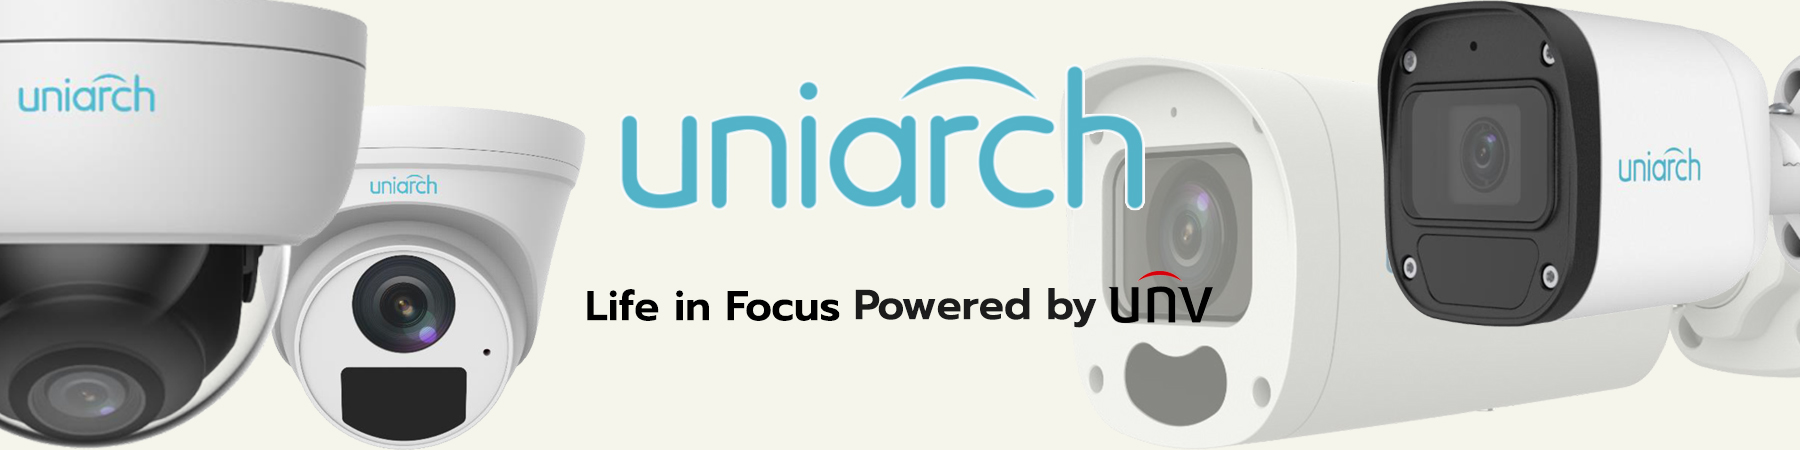 Uniarch, Uniarch NVR, Uniarch Network Video Recorder, Uniarch IP Camera, Uniarch IPC, กล้องวงจรปิด Uniarch, เครื่องบันทึกภาพ Uniarch, Uniarch by UNV